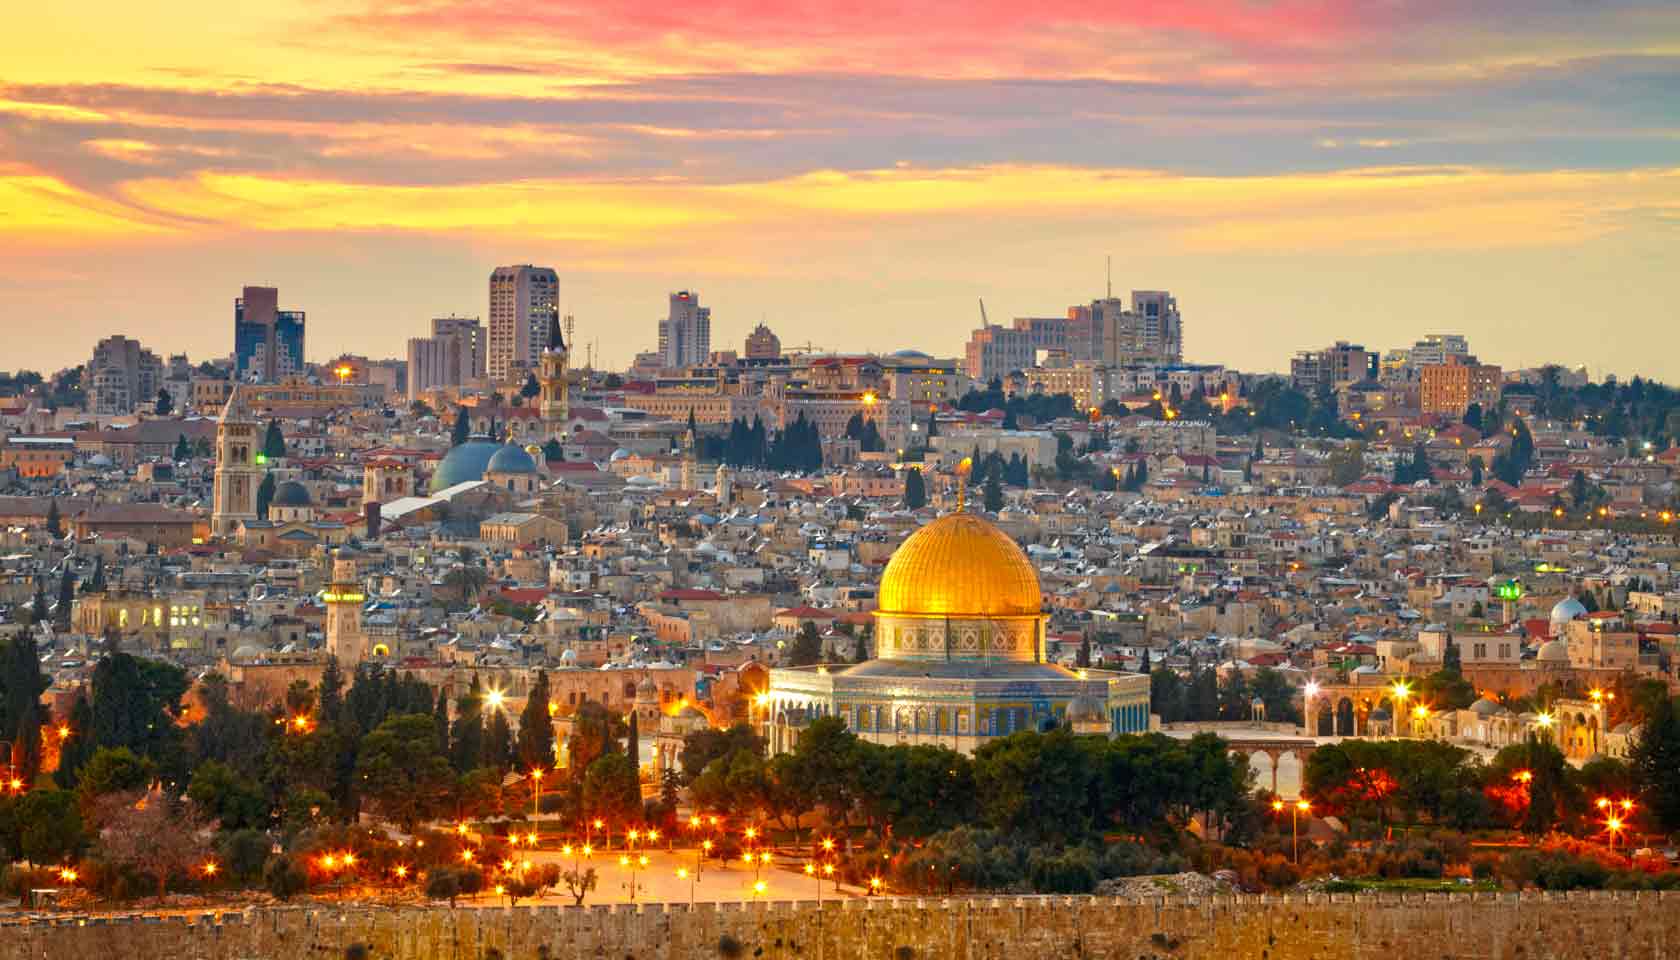 نداء الوطن - القدس عاصمة دولة فلسطين